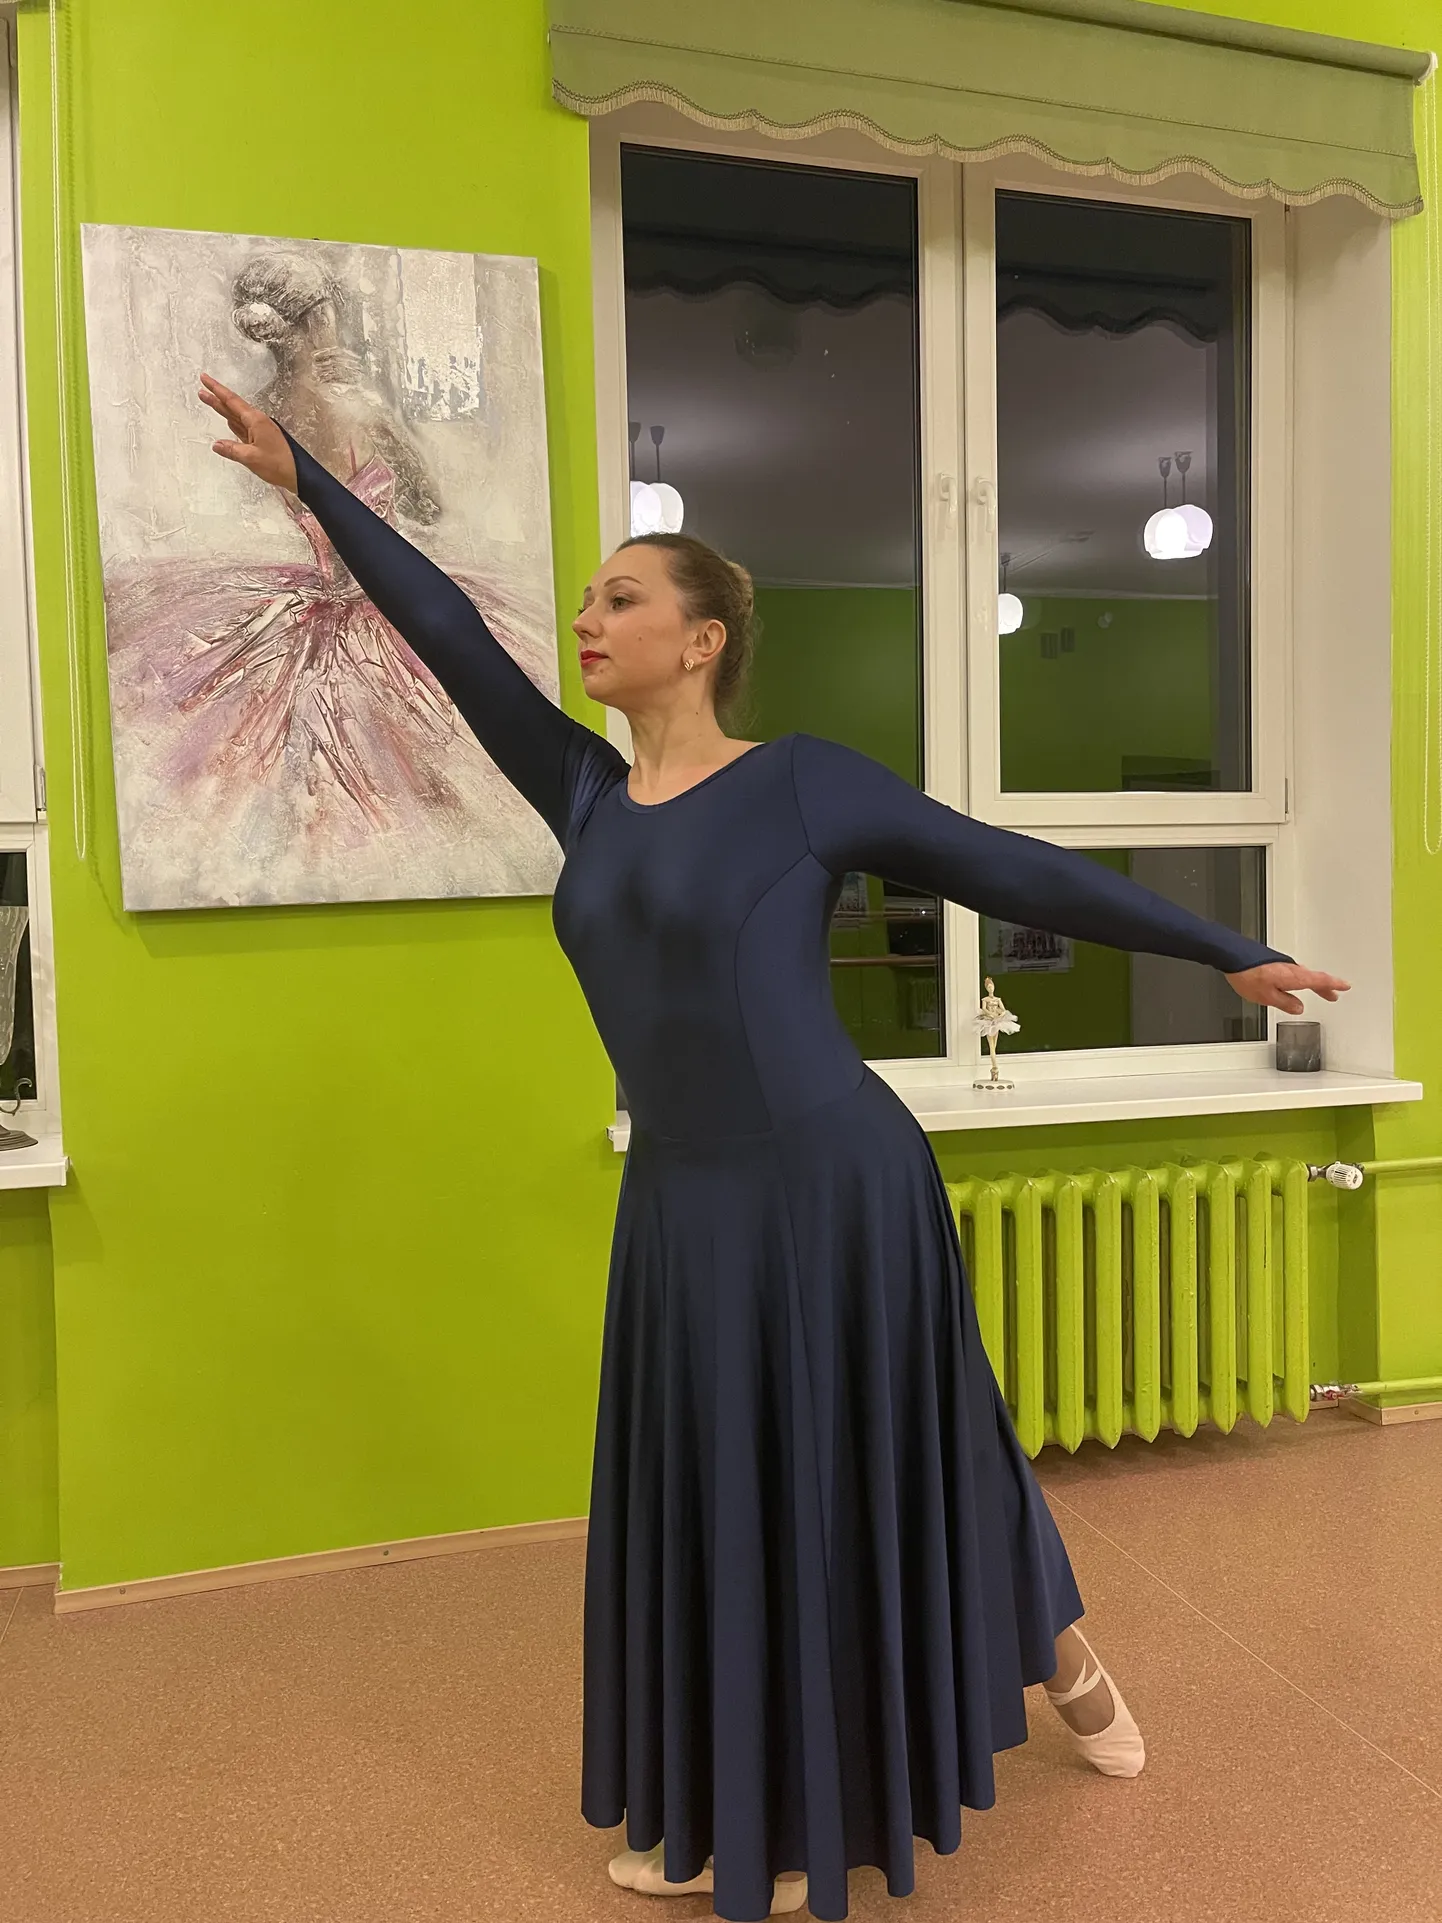 Юлия Ивасюк не расстается с "Ритмом" уже 15 лет, уверяя, что именно танцы делают ее счастливой.